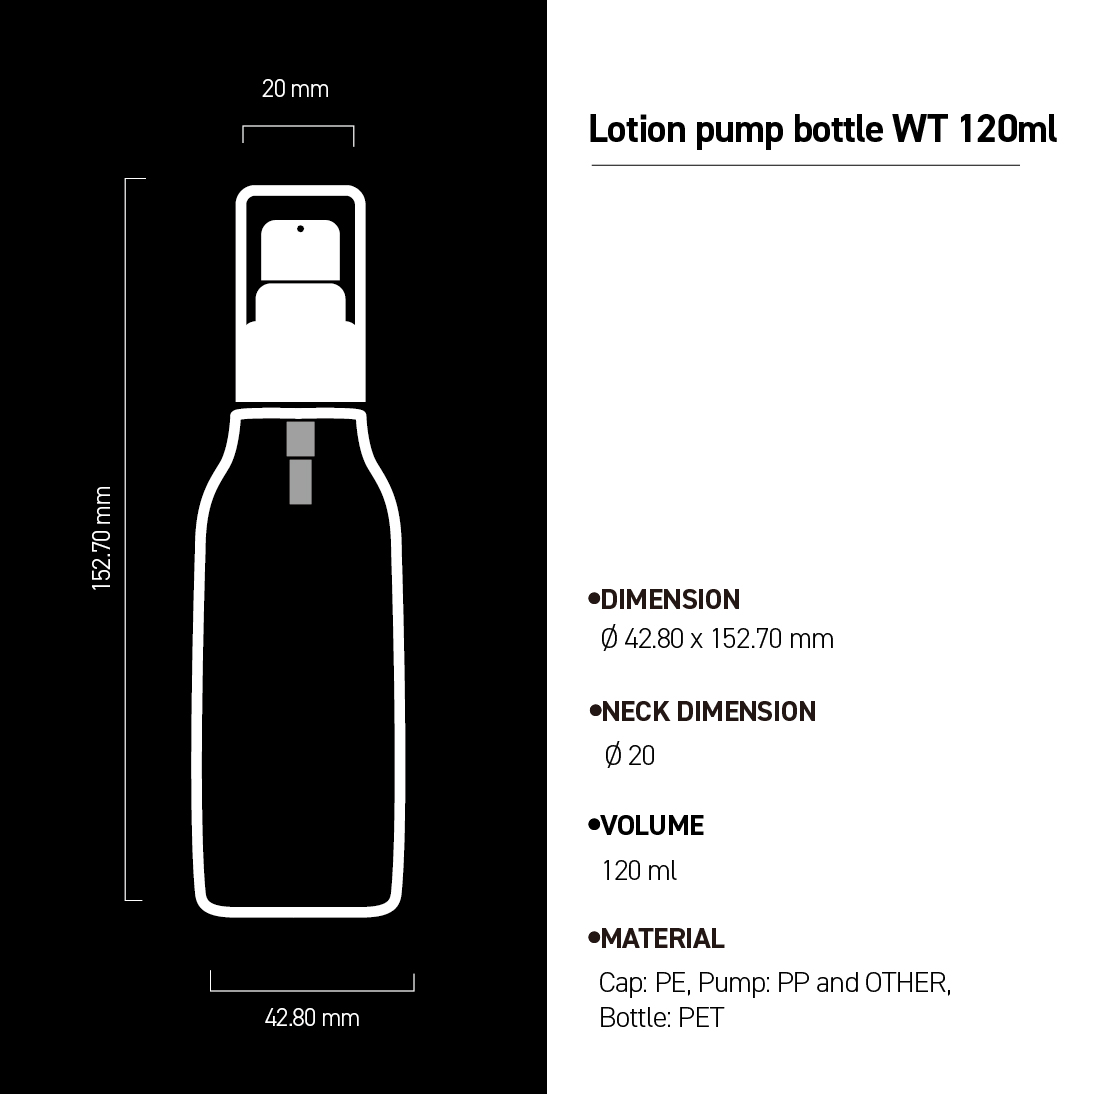 Lotion pump bottle WT 120ml image 3